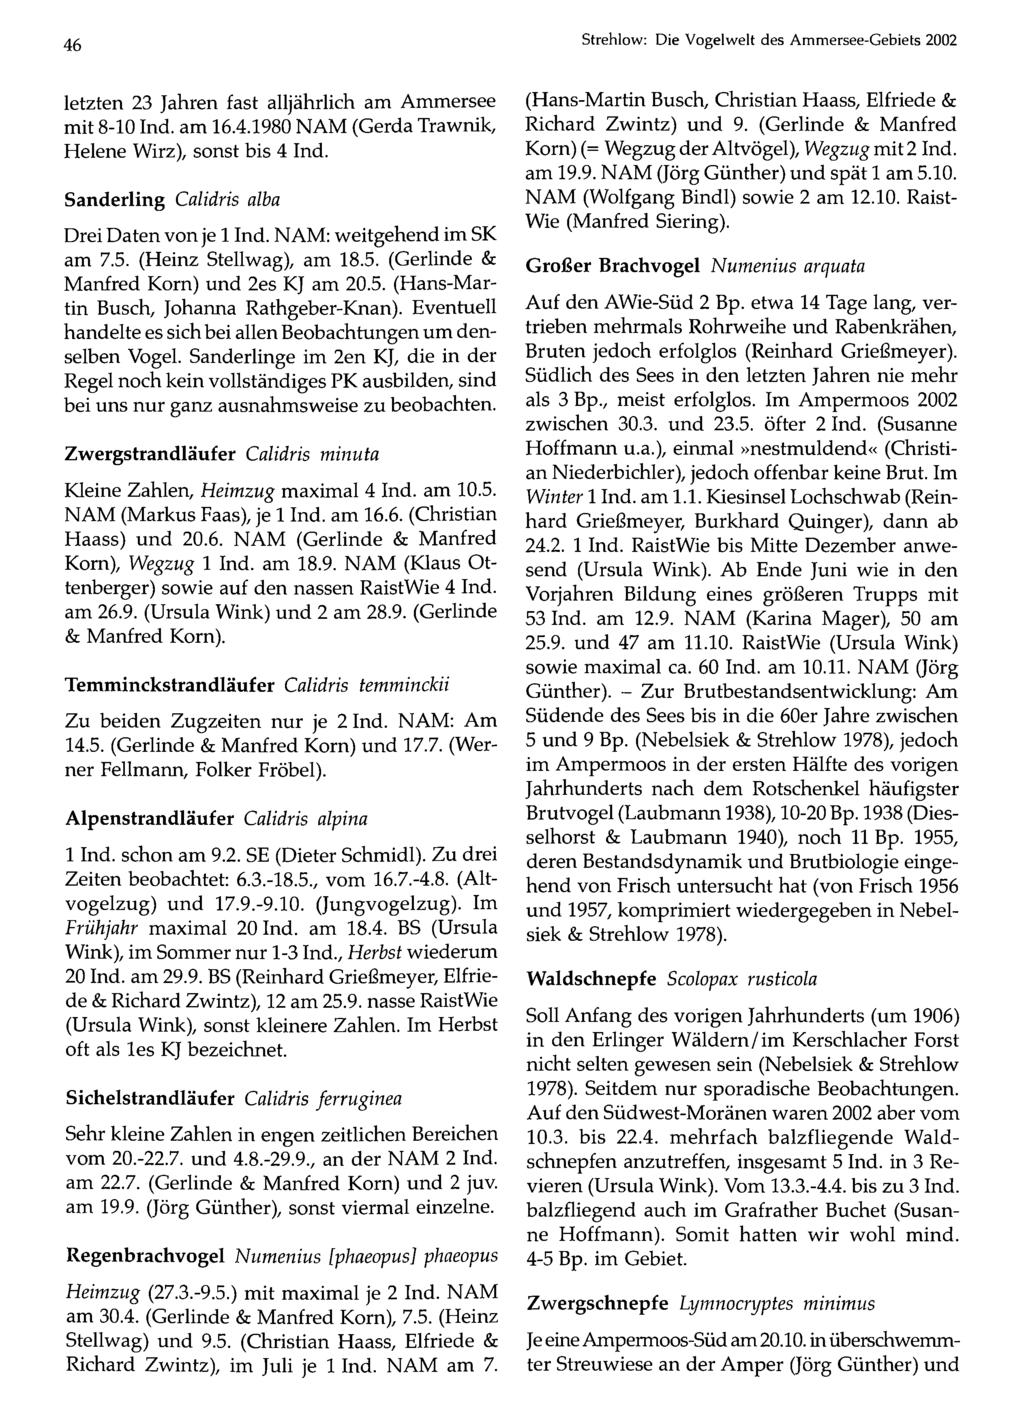 Ornithologische Gesellschaft Bayern, download unter 46 Strehlow: www.biologiezentrum.at Die Vogelwelt des Ammersee-Gebiets 2002 letzten 23 Jahren fast alljährlich am Ammersee mit 8-10 Ind. am 16.4.1980 NAM (Gerda Trawnik, Helene Wirz), sonst bis 4 Ind.